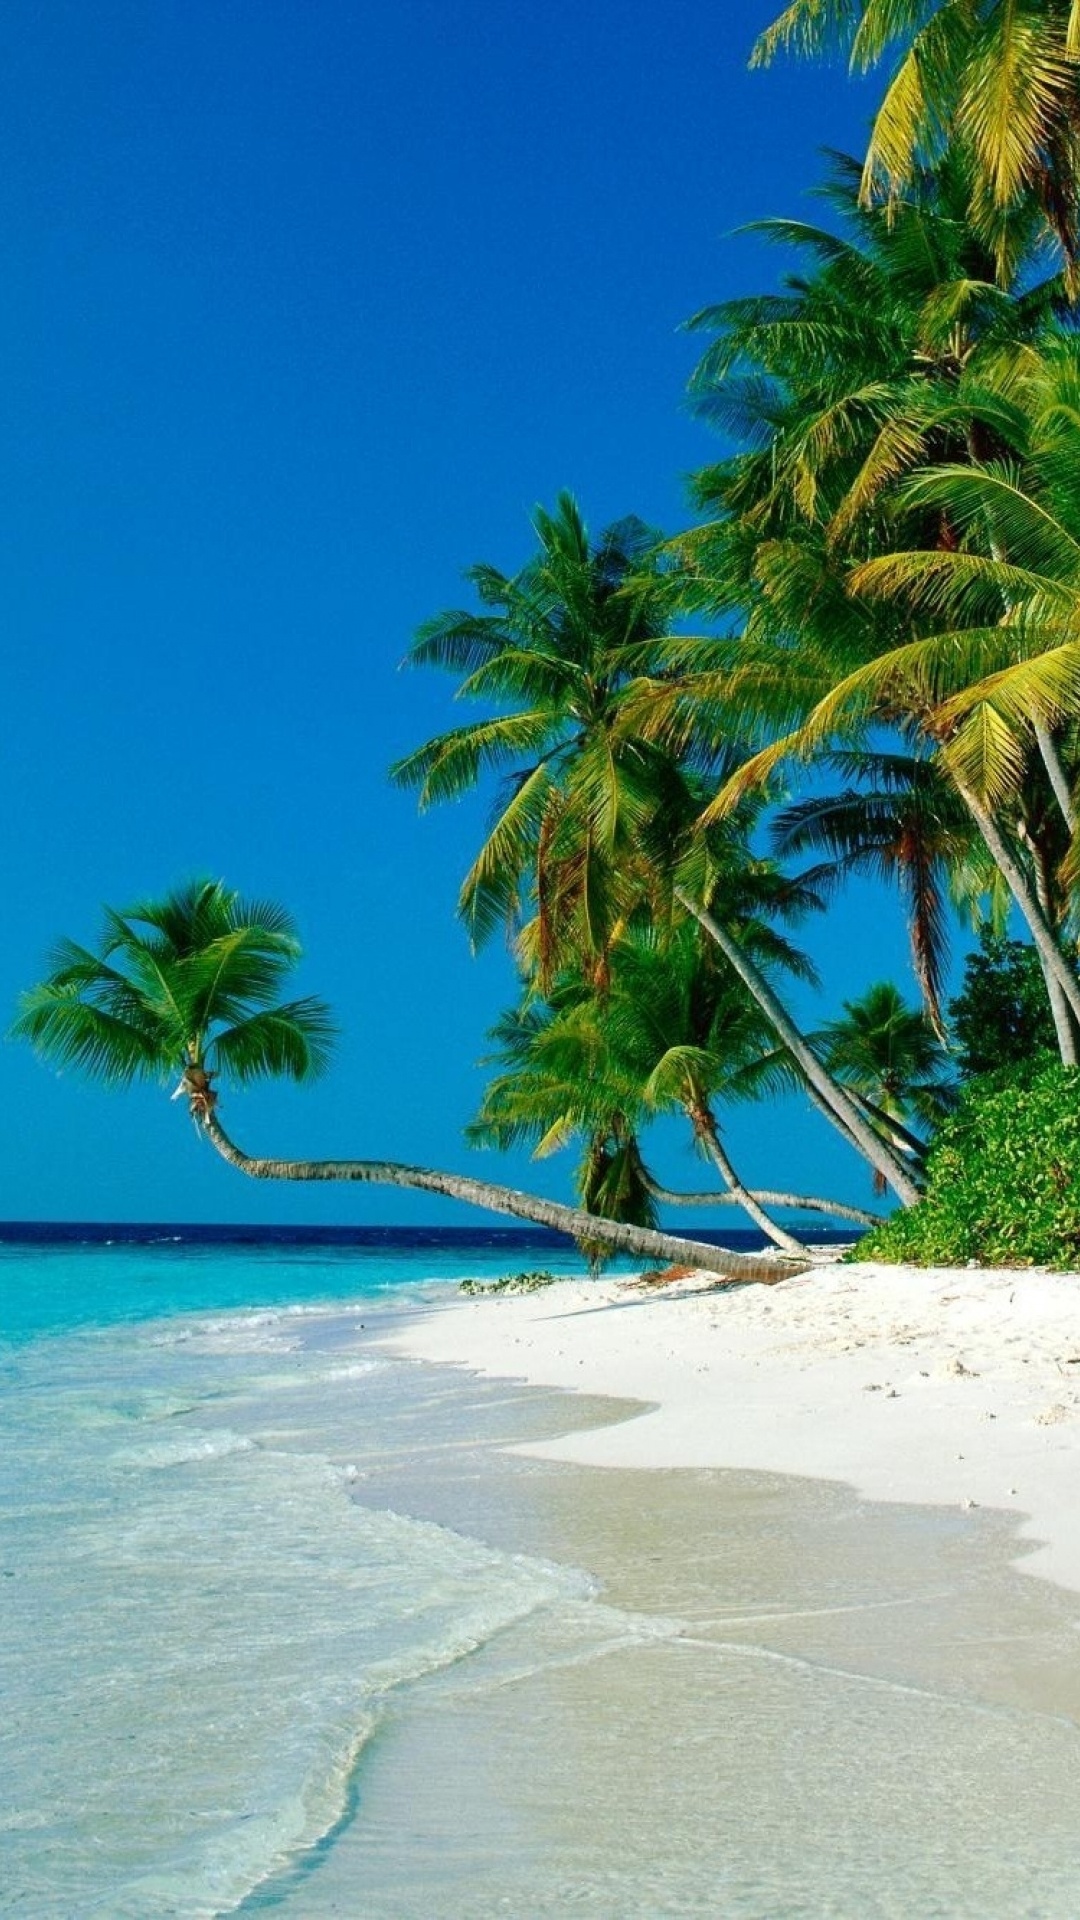 Ocean Palm Trees Shore Beach Galaxy S4 Wallpaper